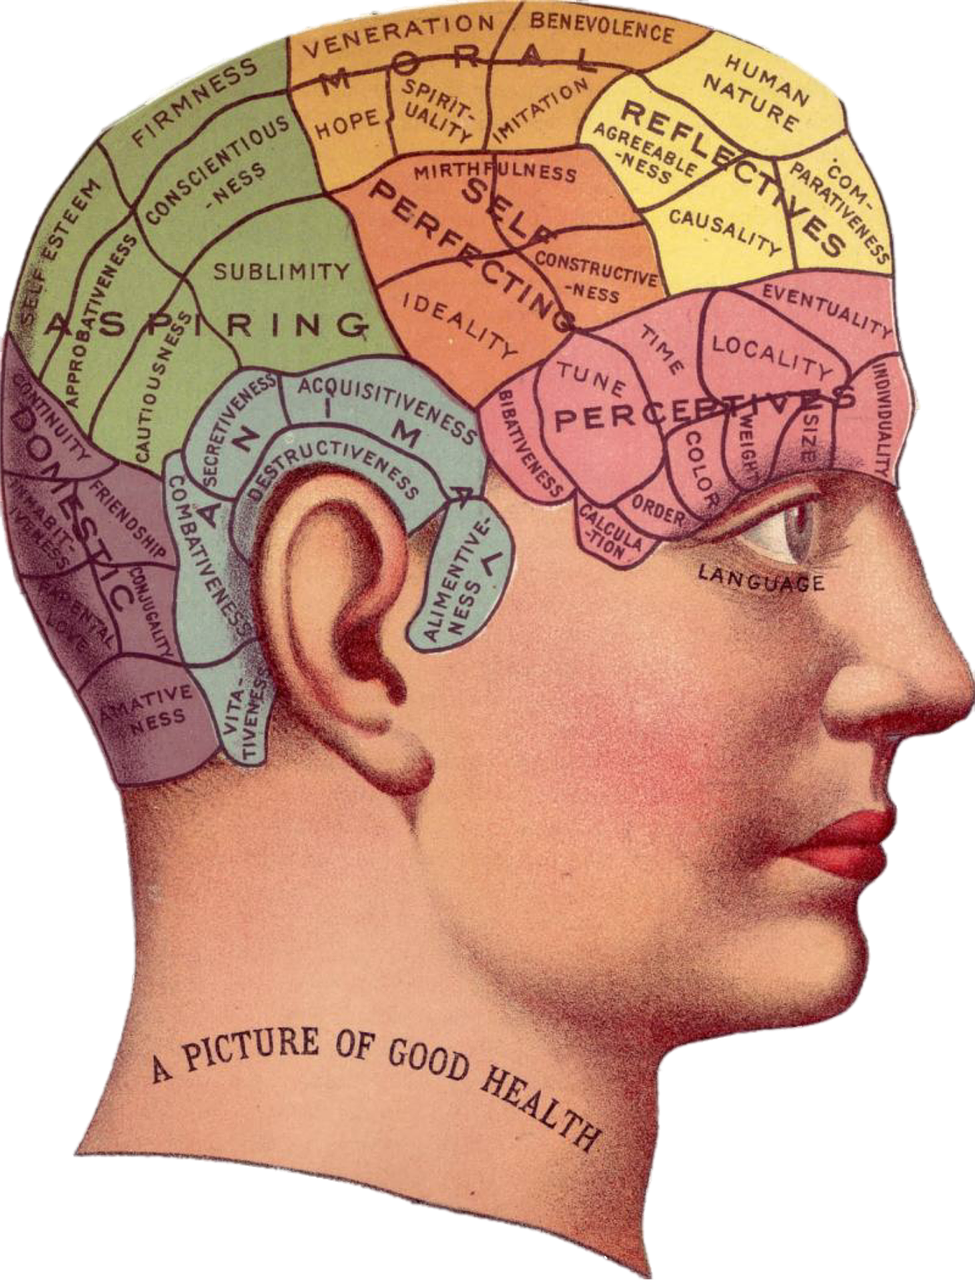  la neuropsicología estudia la relación entre el cerebro humano, el comportamiento humano y las funciones mentales como la atención, la memoria, etc.